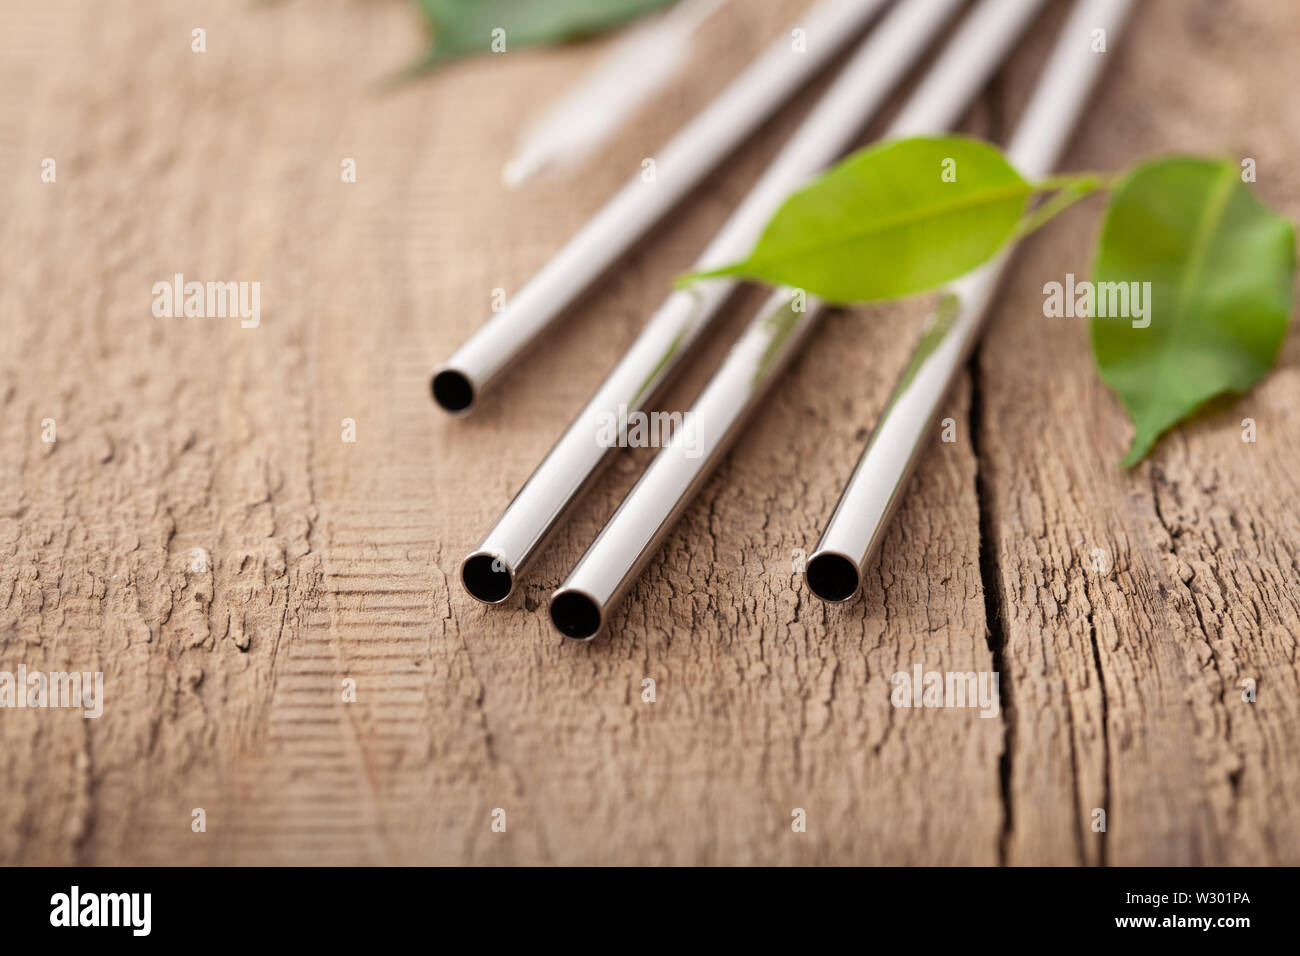 eco-friendly reusable metal drinking straw. zero waste concept Stock Photo